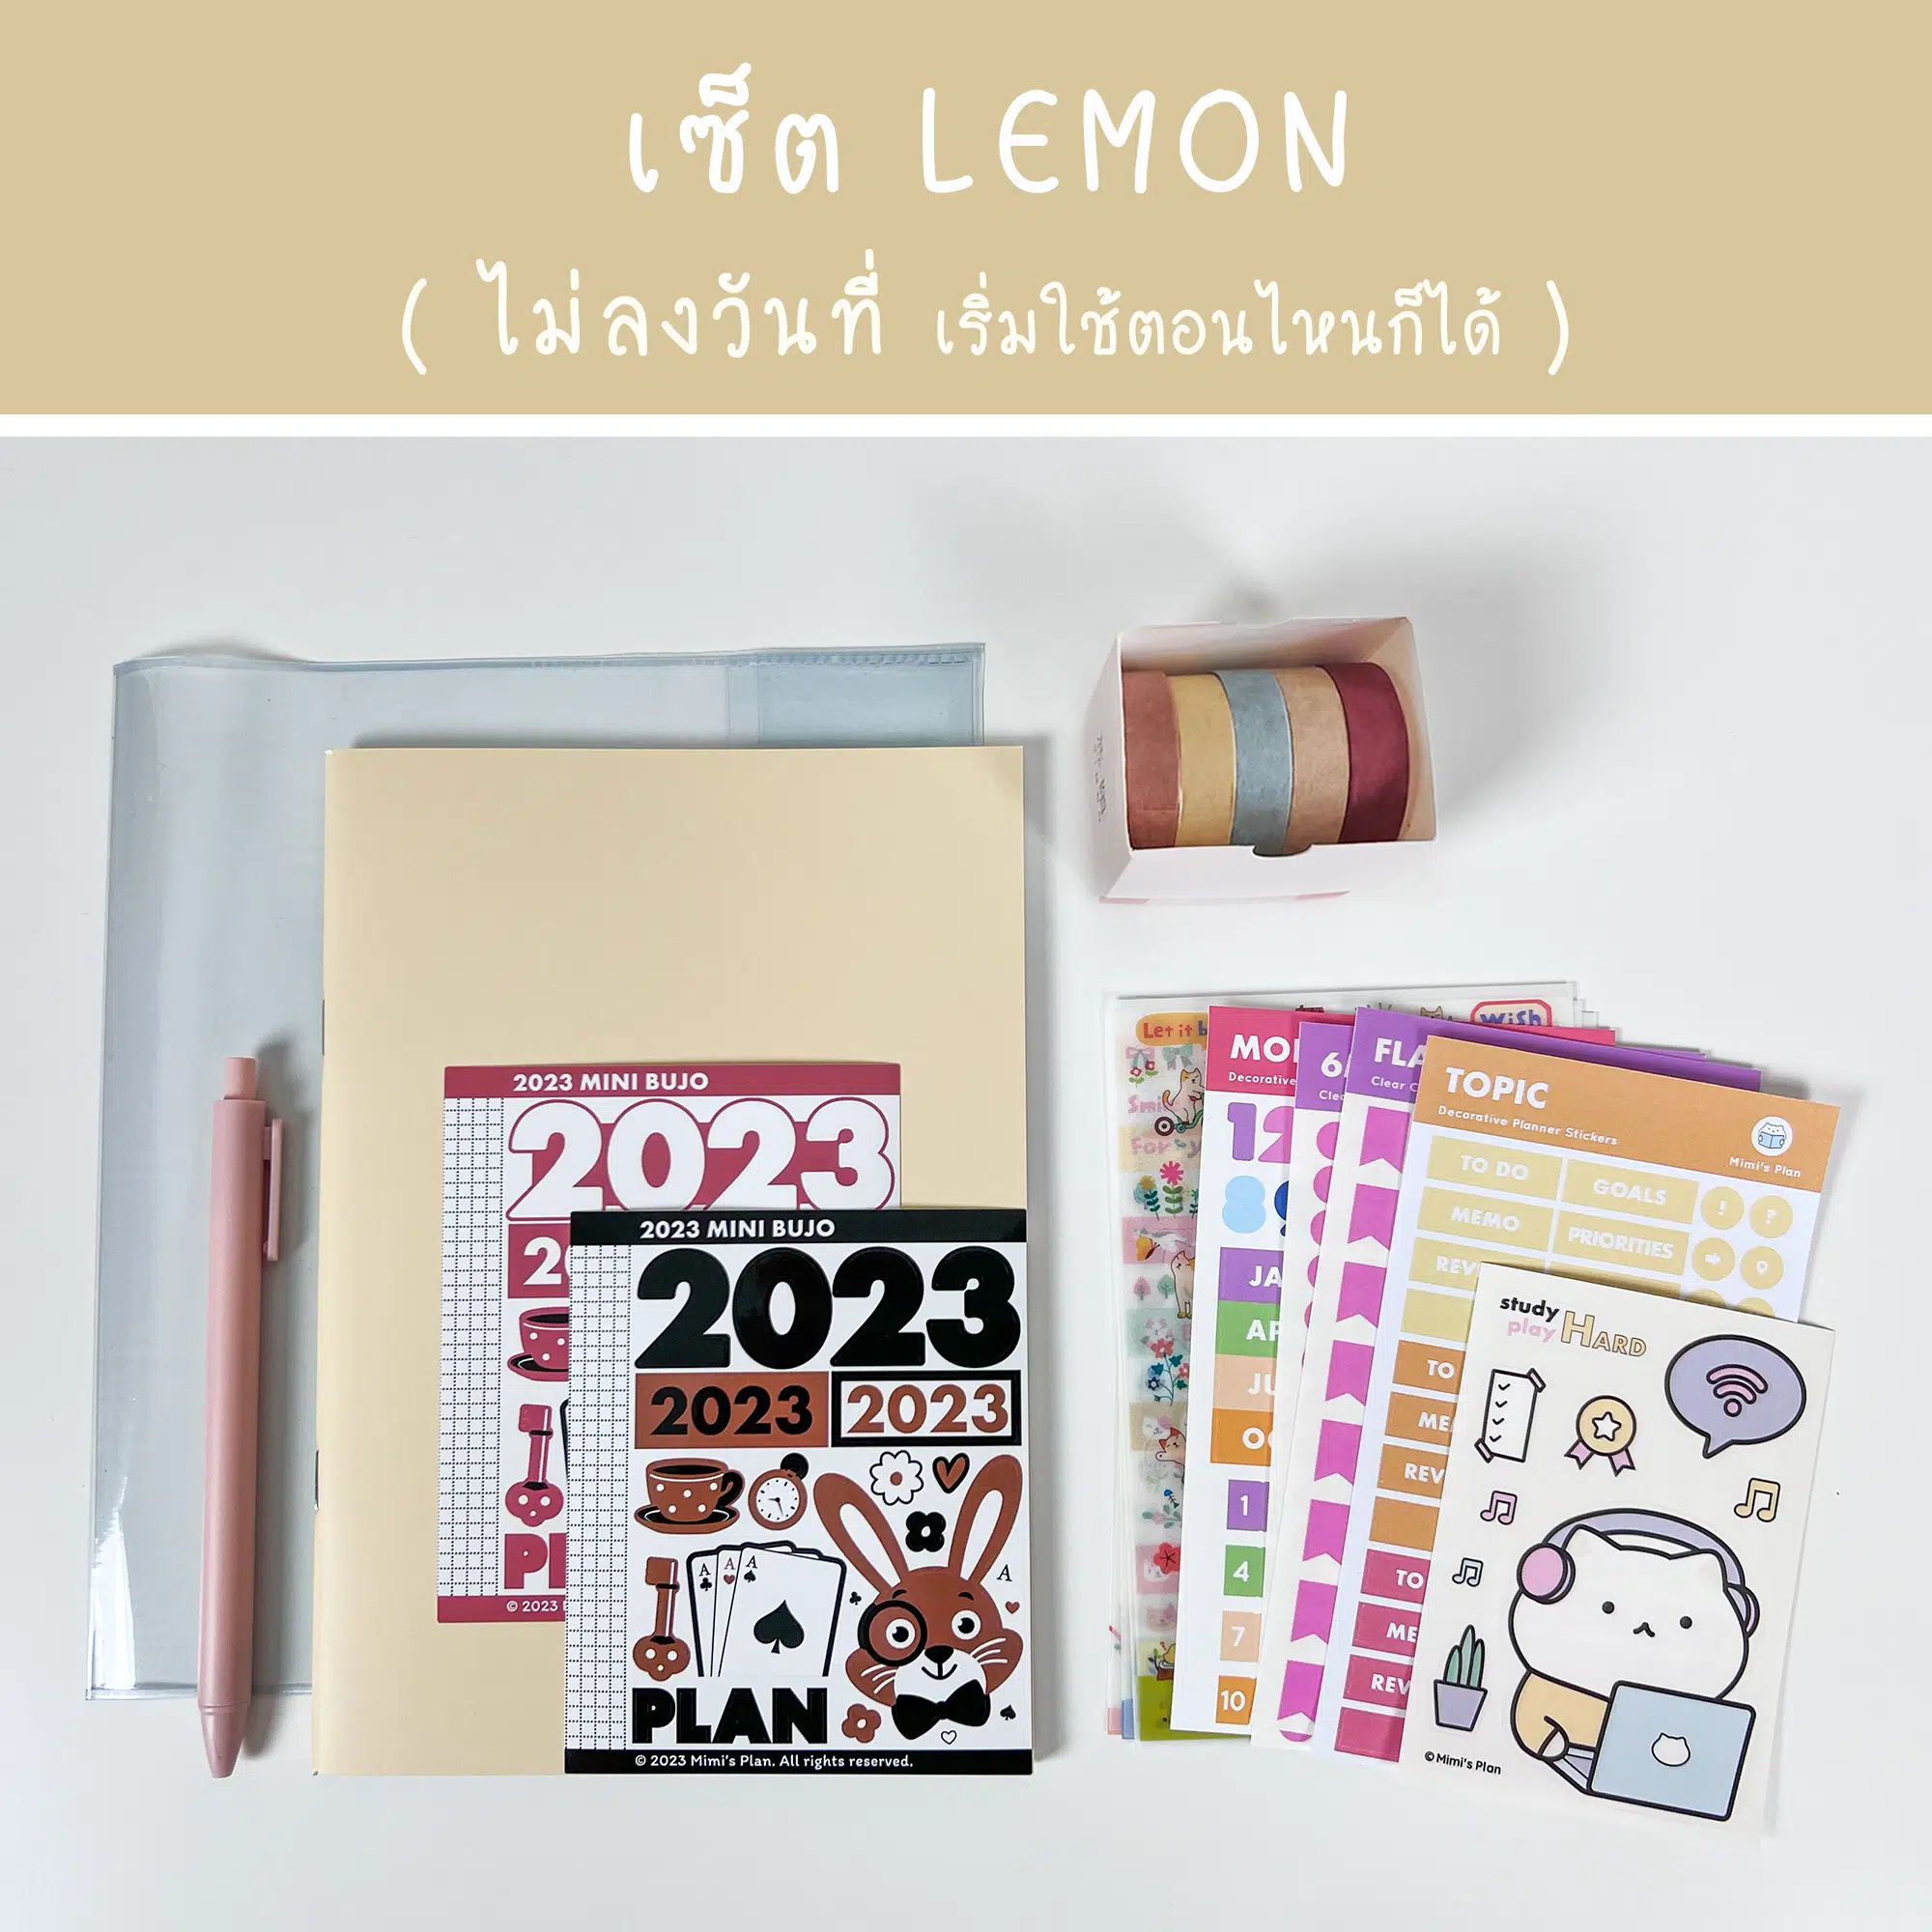 2023 mini bujo full set – 14 Lemon